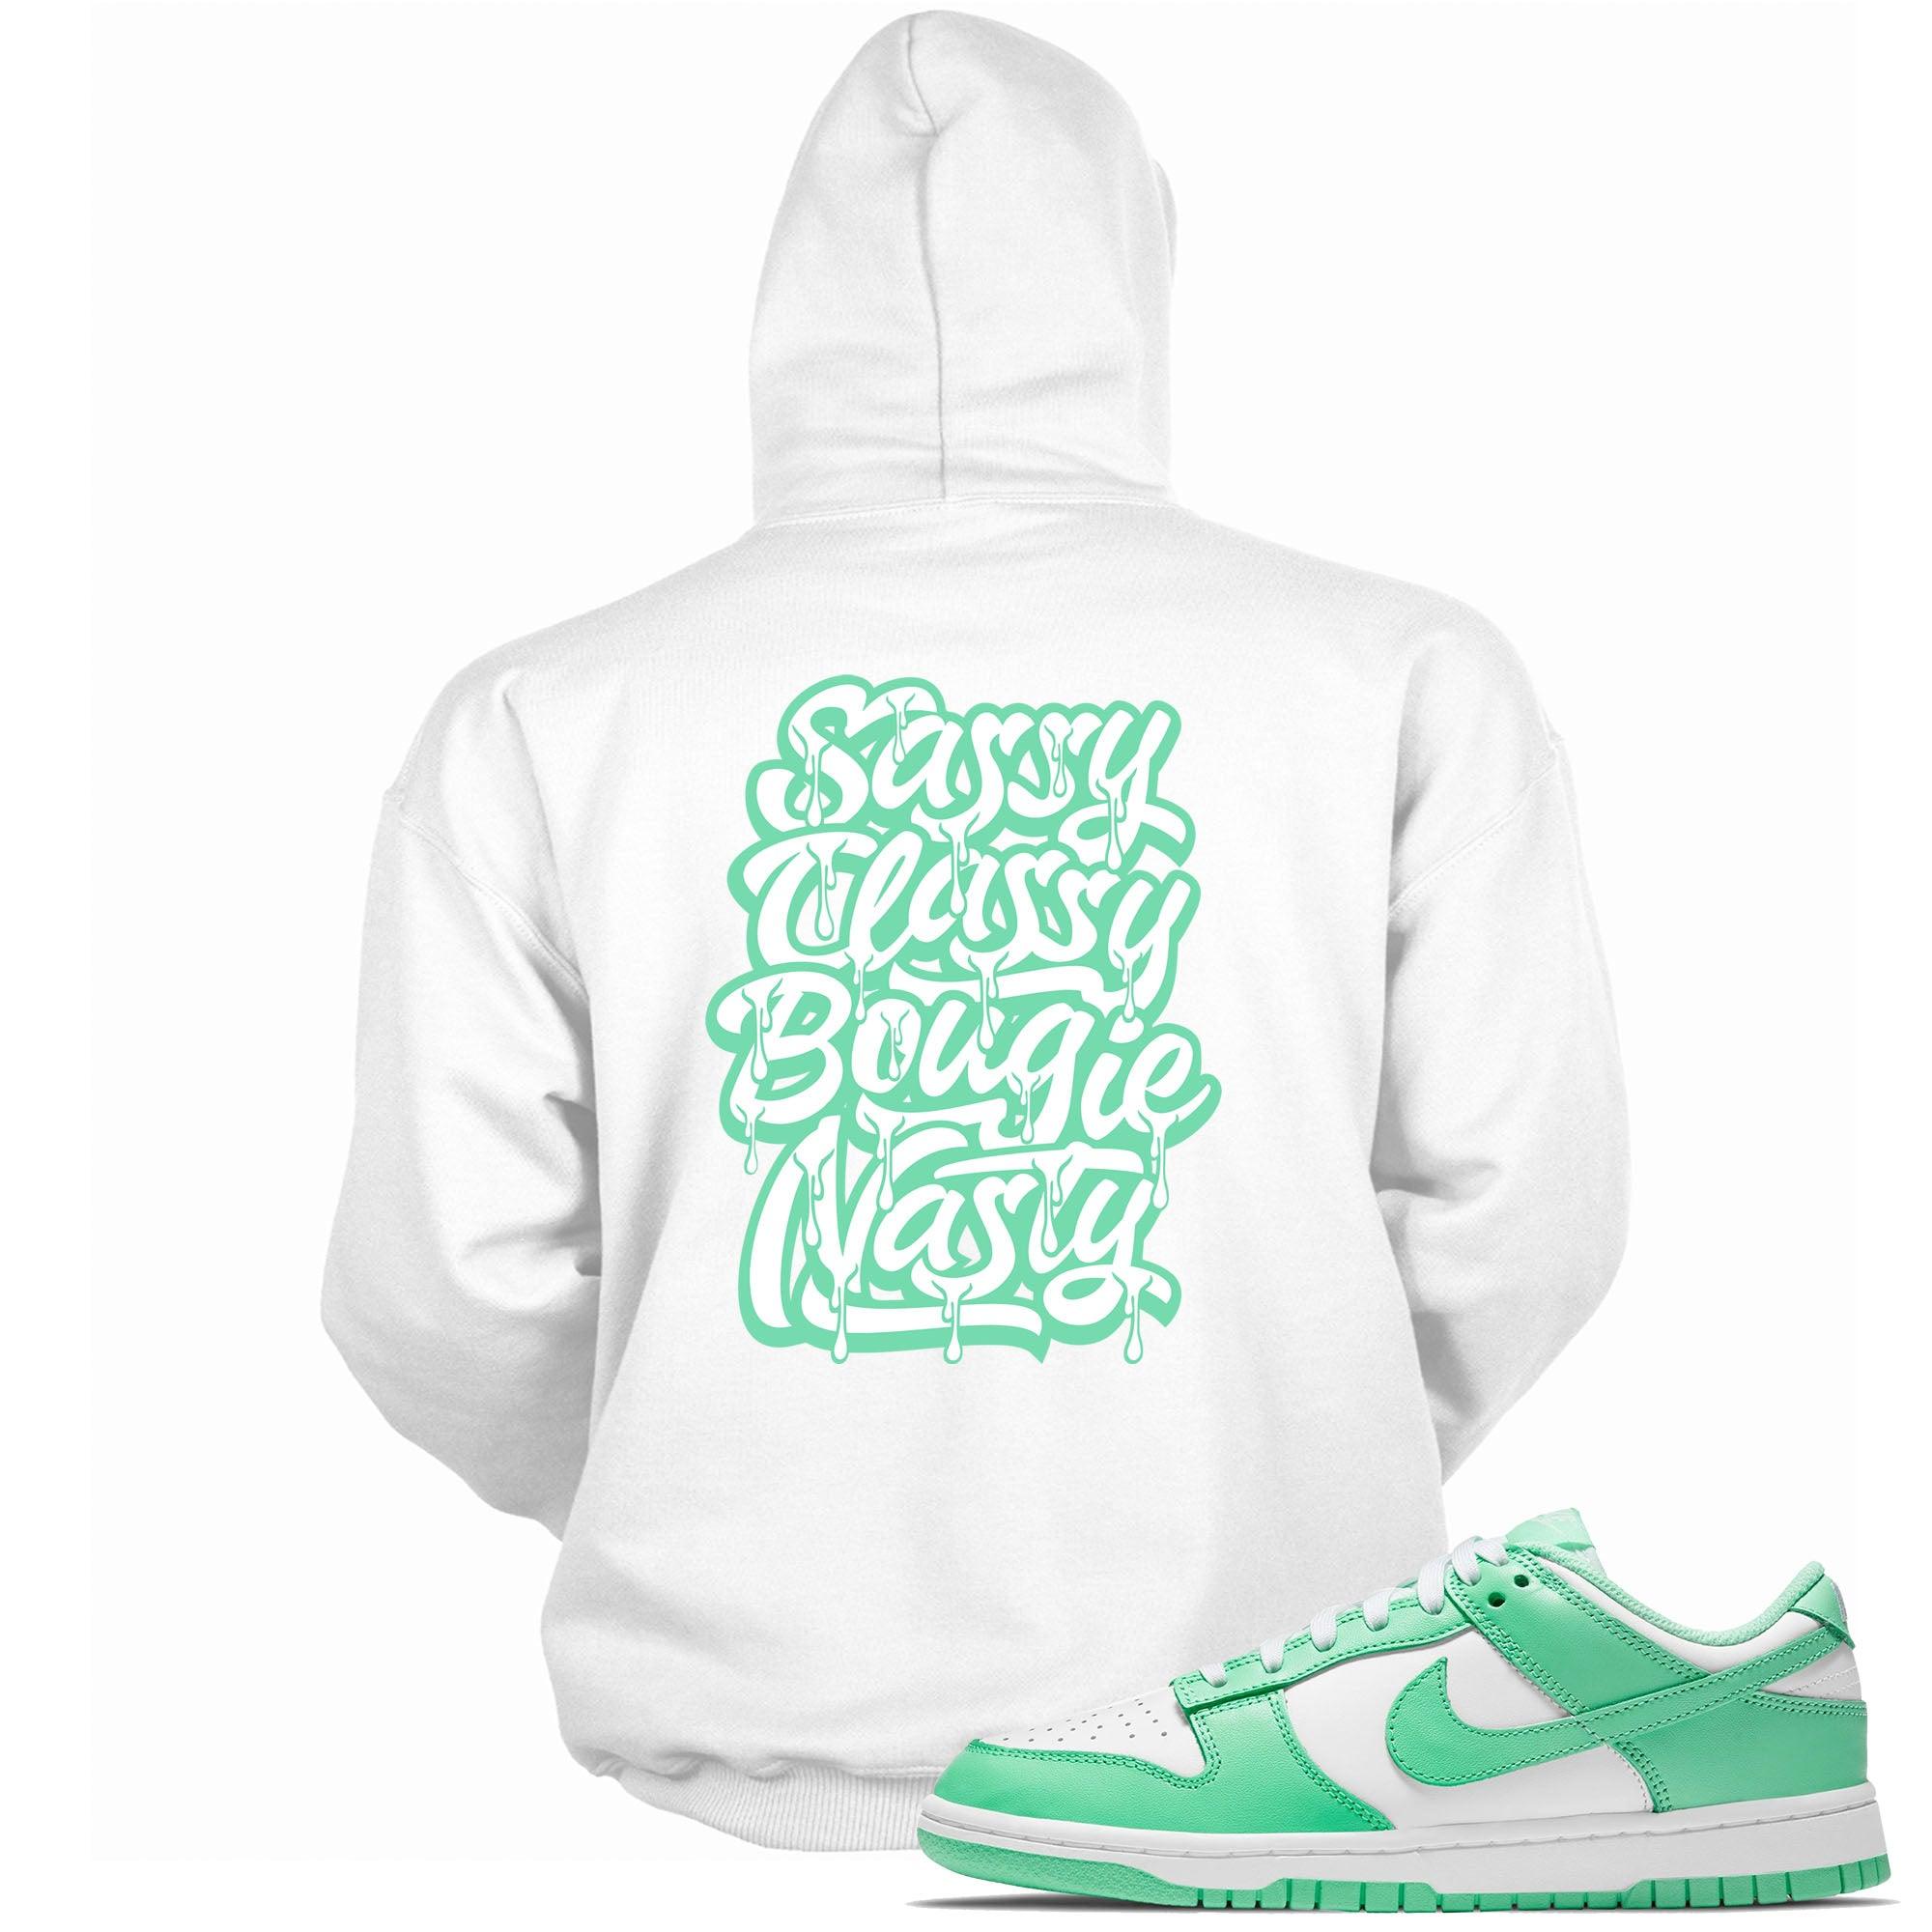 Sassy Classy Bougie Nasty Hoodie Nike Dunk Low Green Glow photo